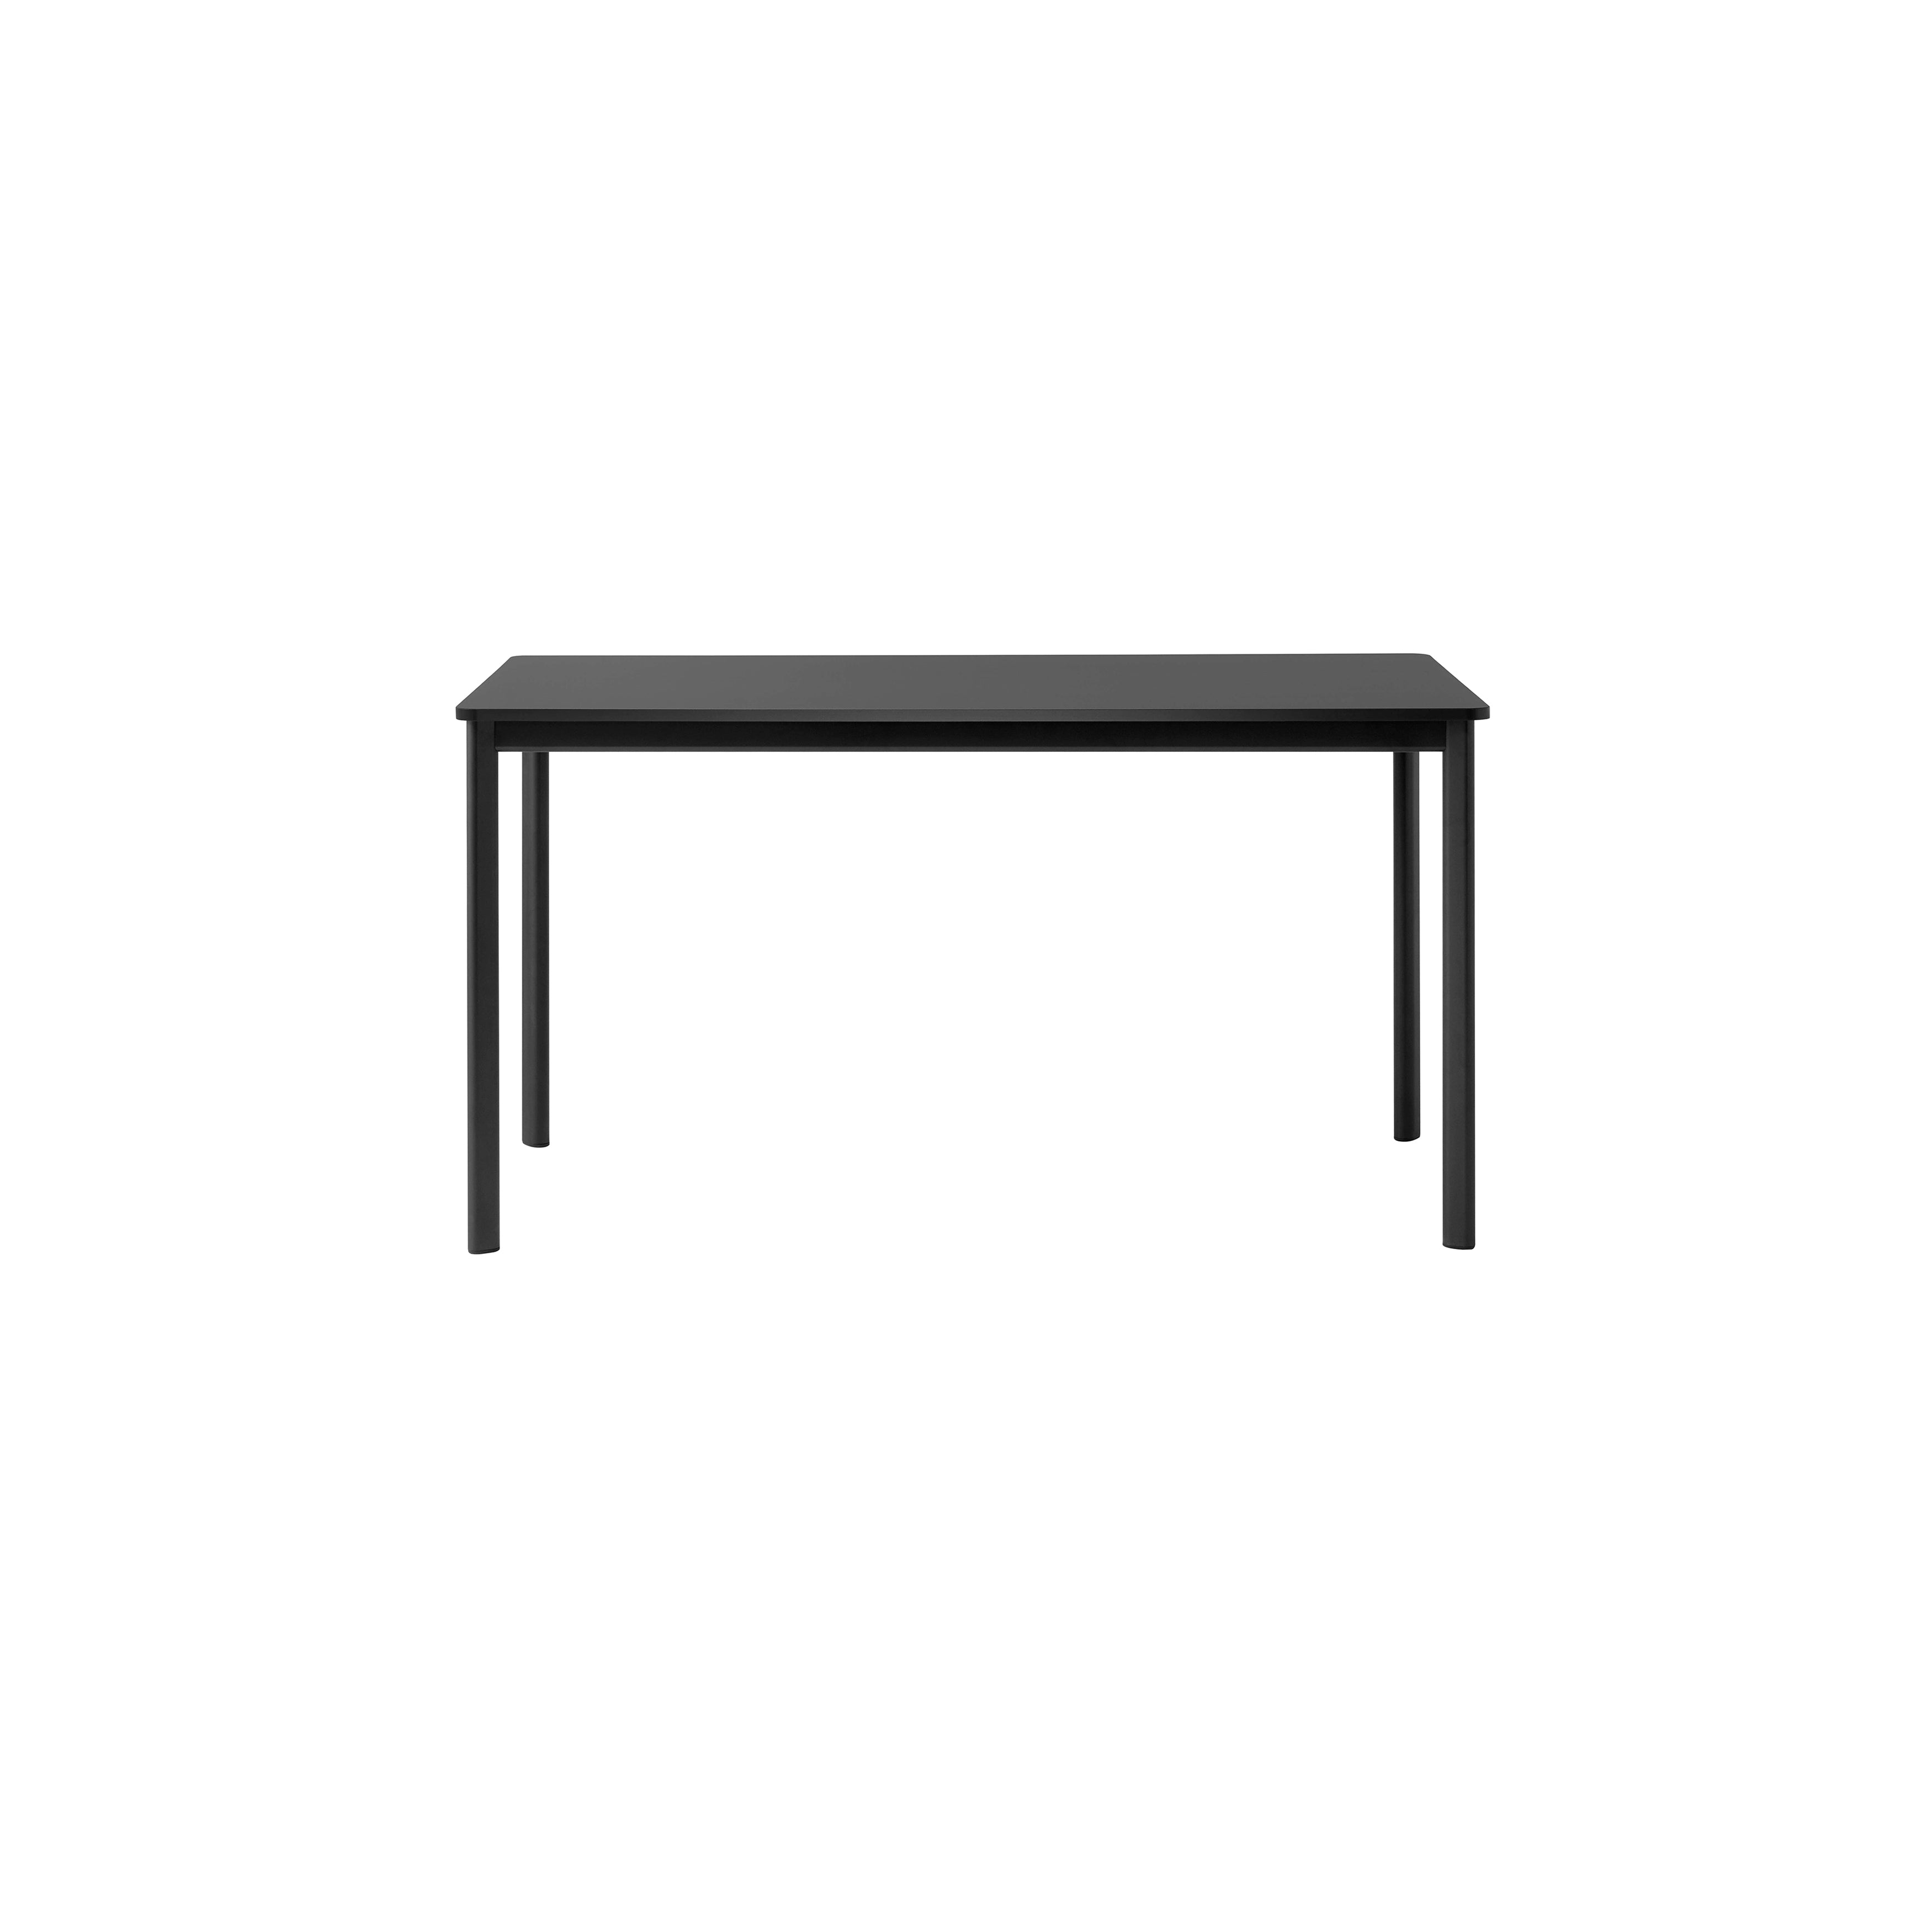 Drip Table: HW58 + HW59 + HW60 + Small (HW58) - 55.1